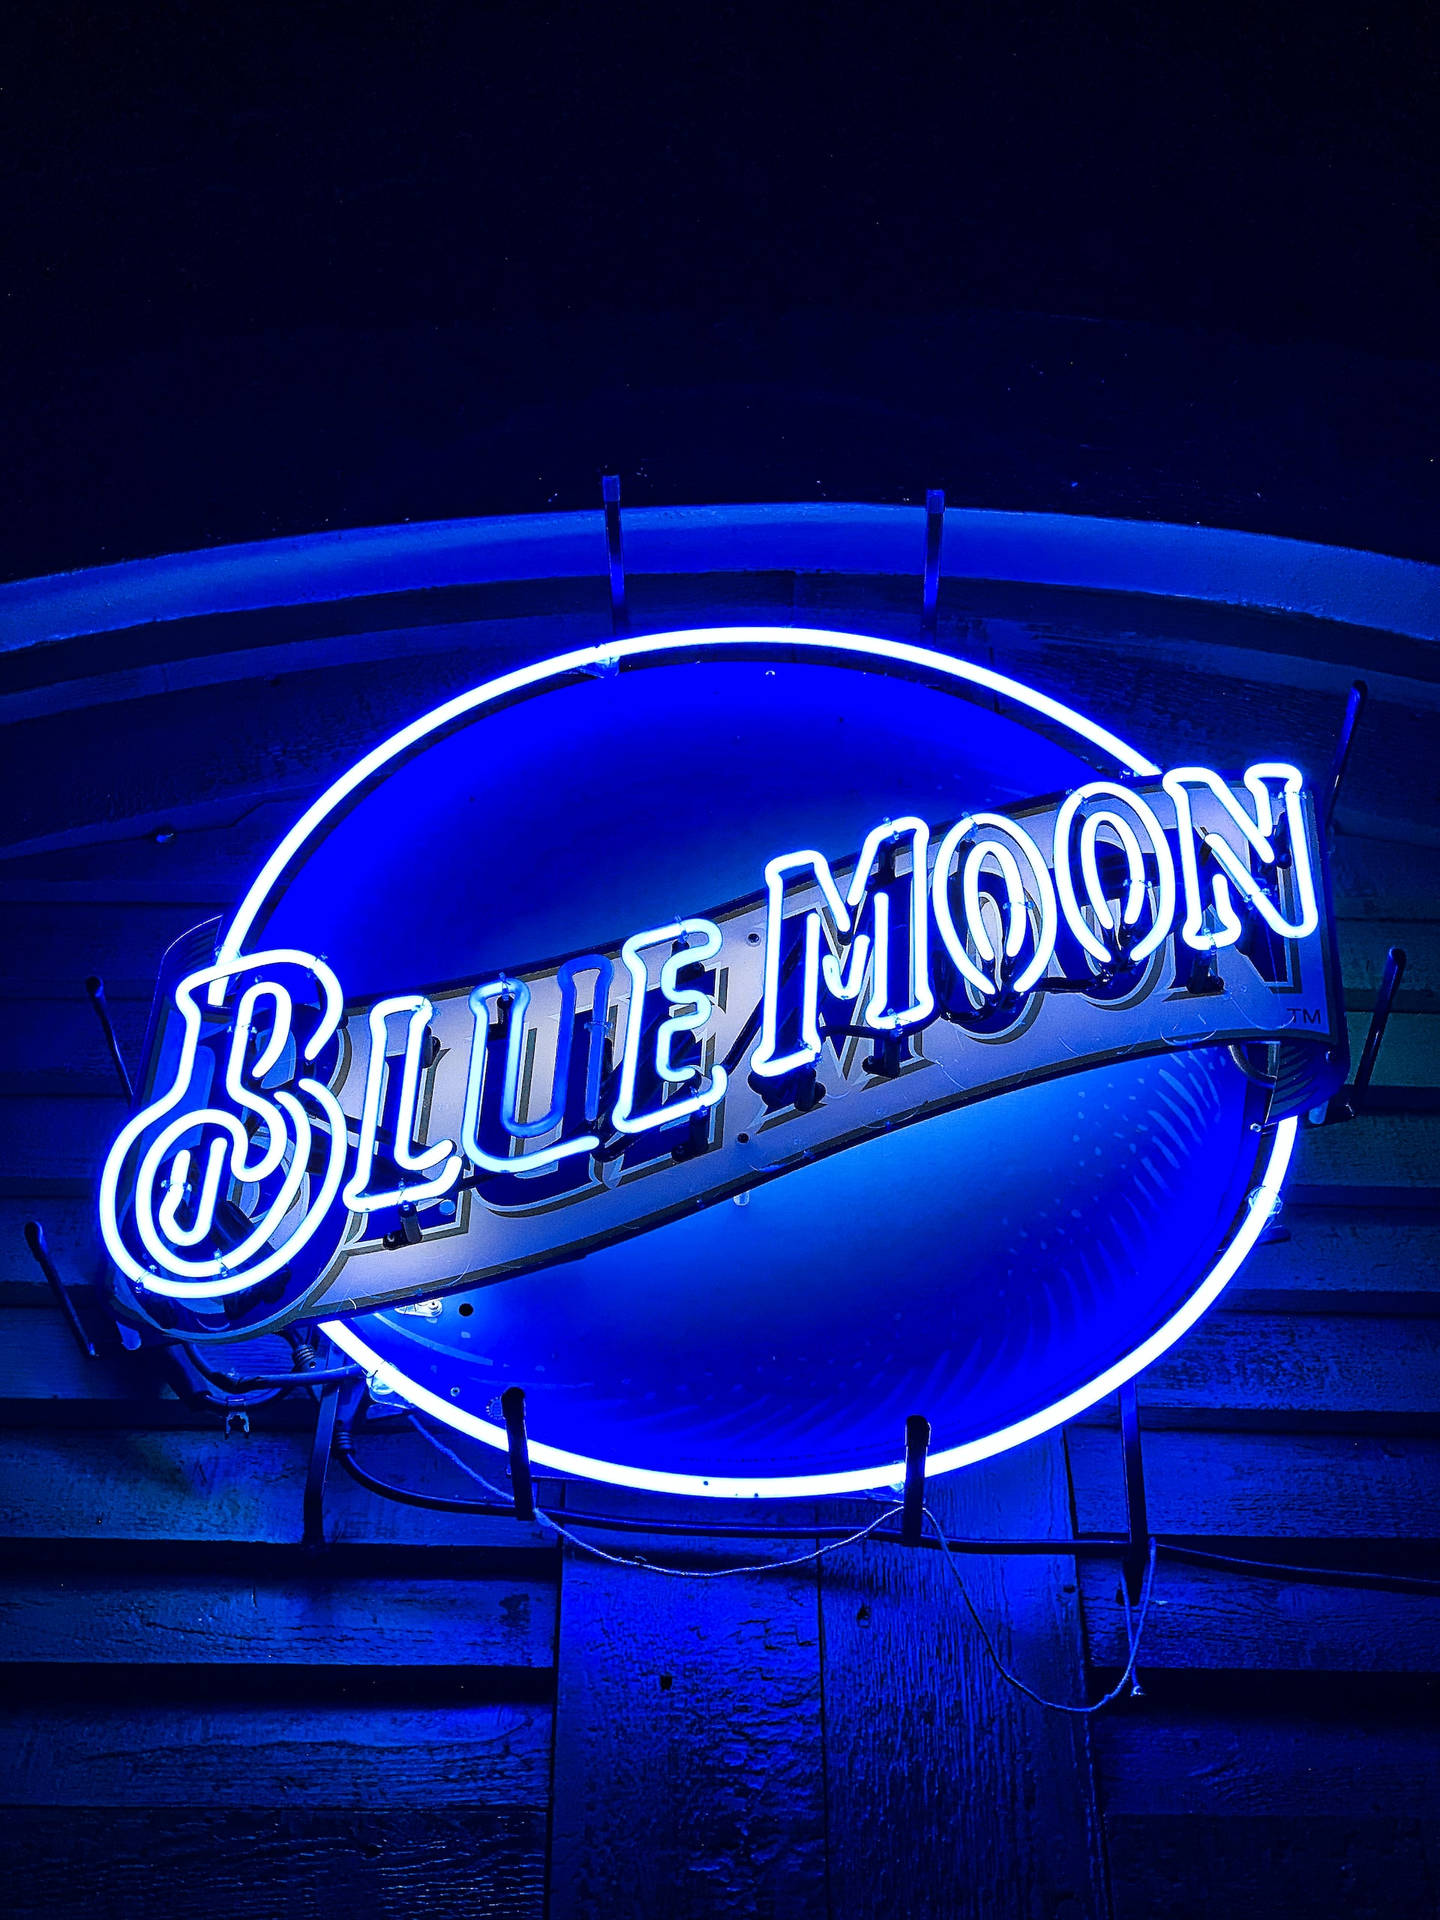 blue moon beer wallpaper